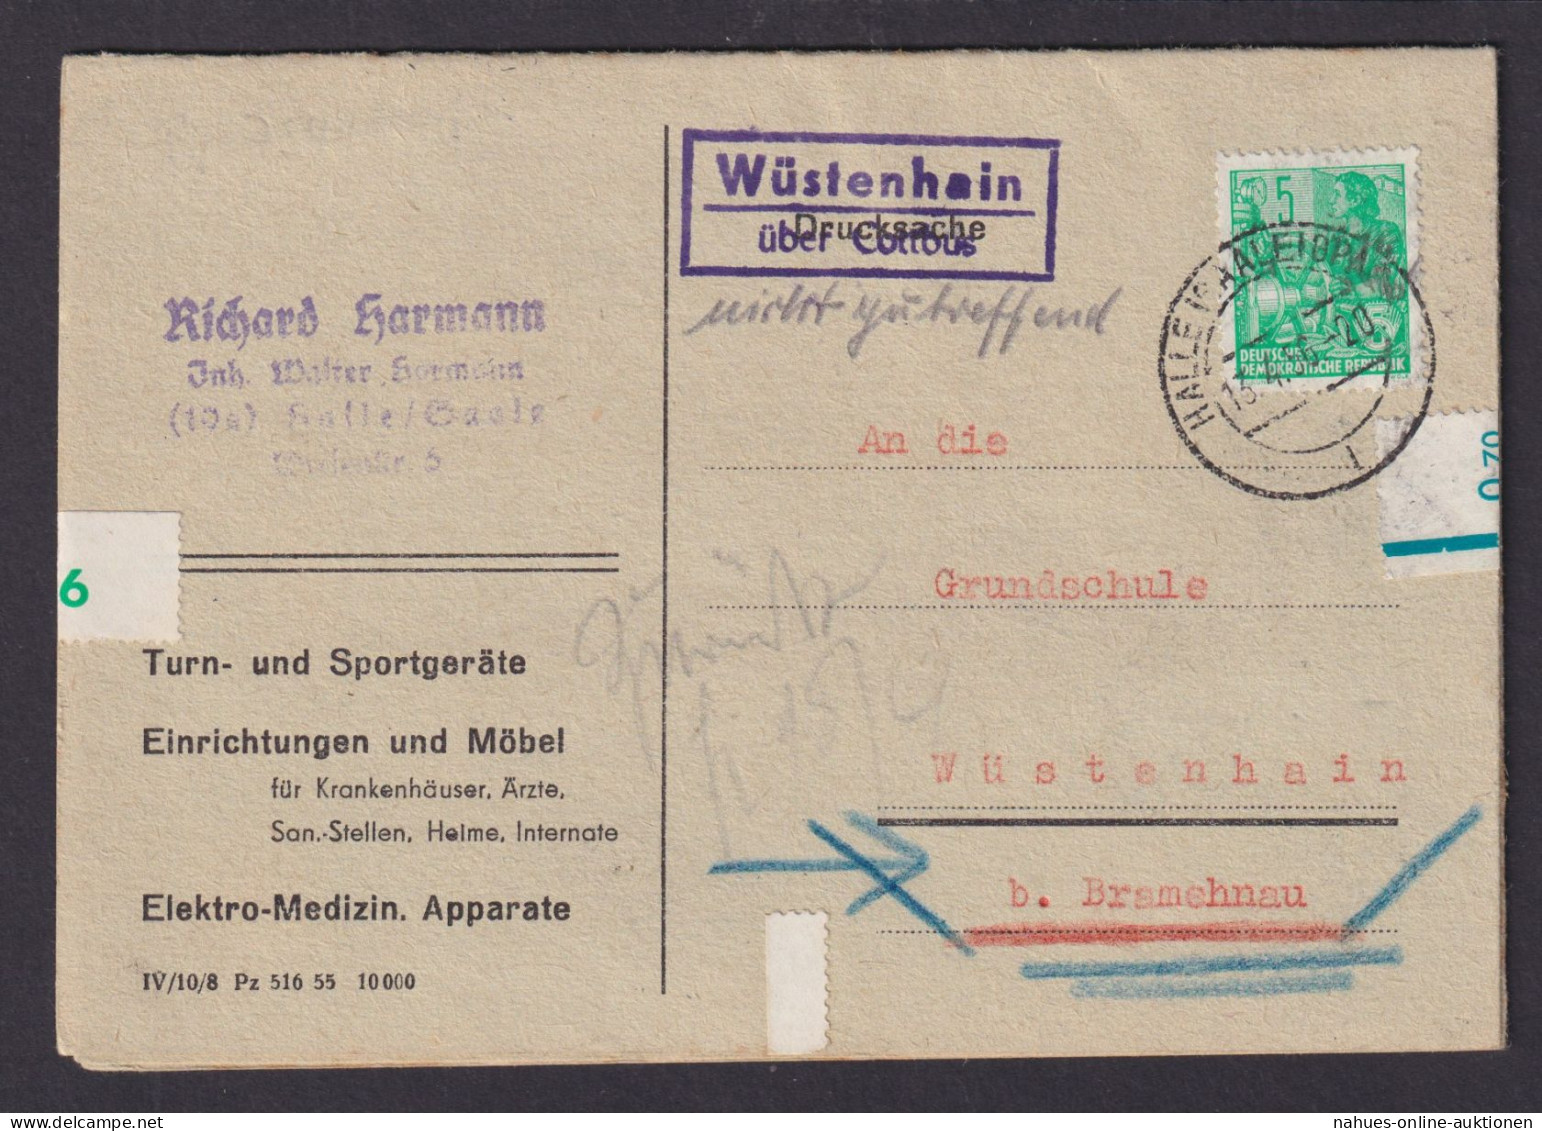 Wüstenhain über Cottbus Brandenburg DDR Bestellkarte Landpoststempel N. Bramenau - Briefe U. Dokumente